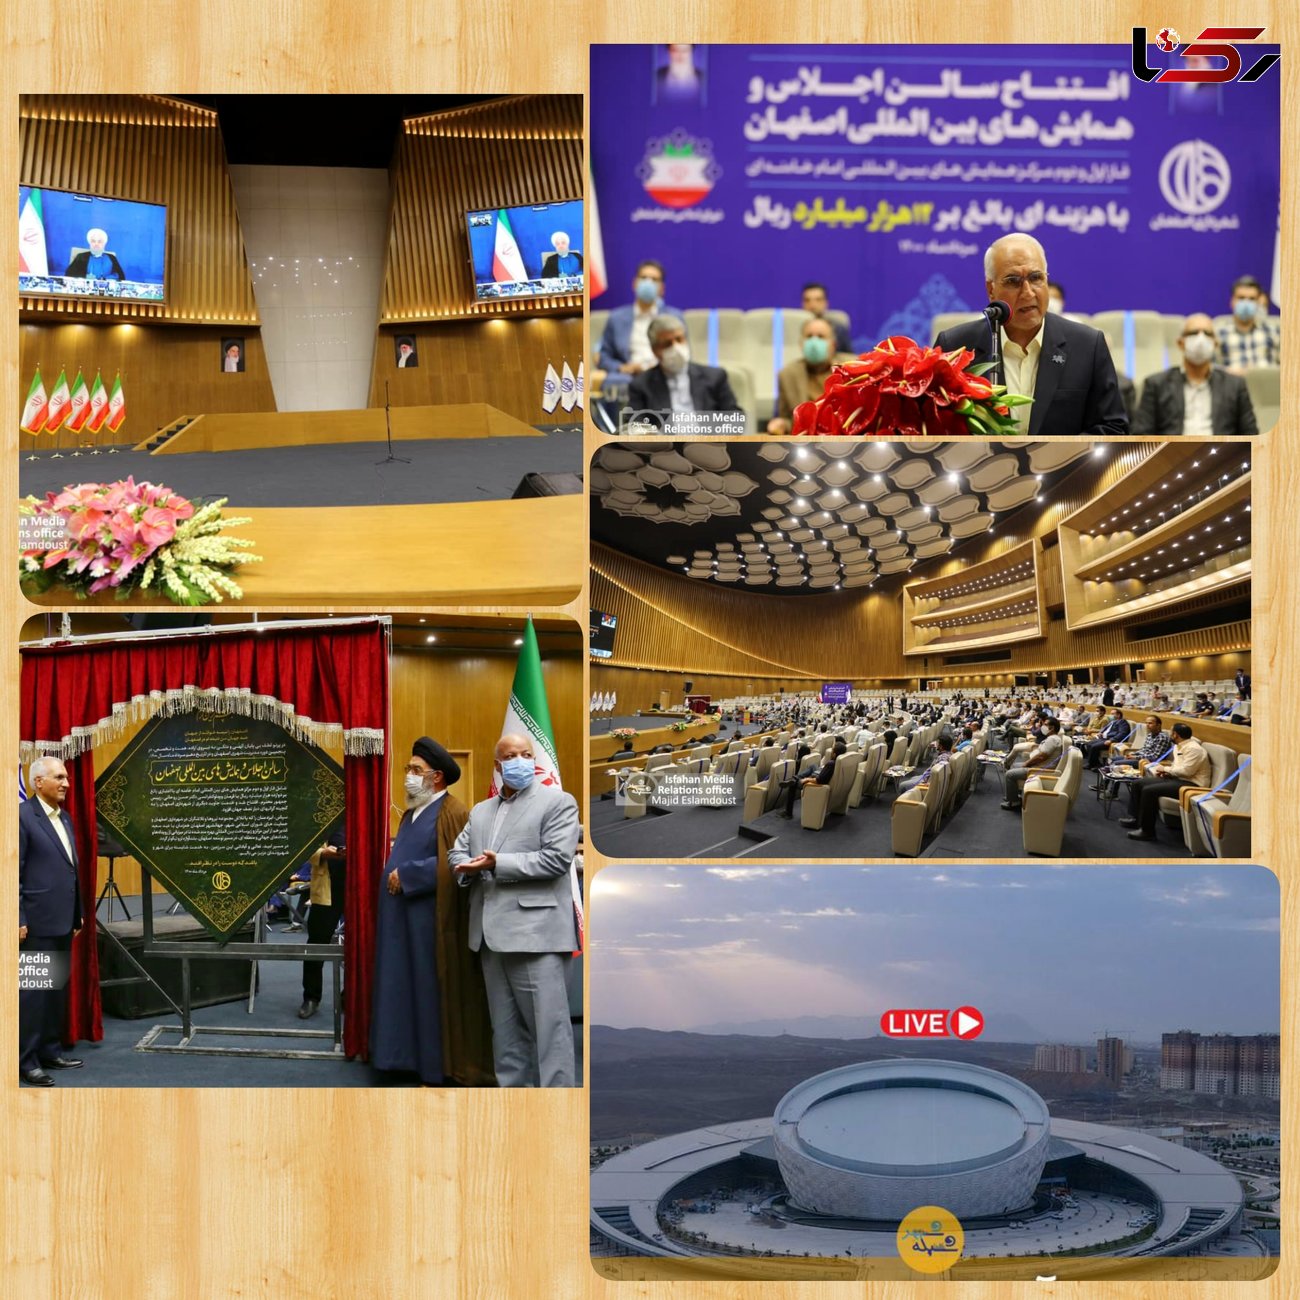 اقدام بسیار ارزشمند اصفهان برای ساخت مرکز همایش های بین المللی در راستای تعامل سازنده با جهان به فال نیک می گیریم
